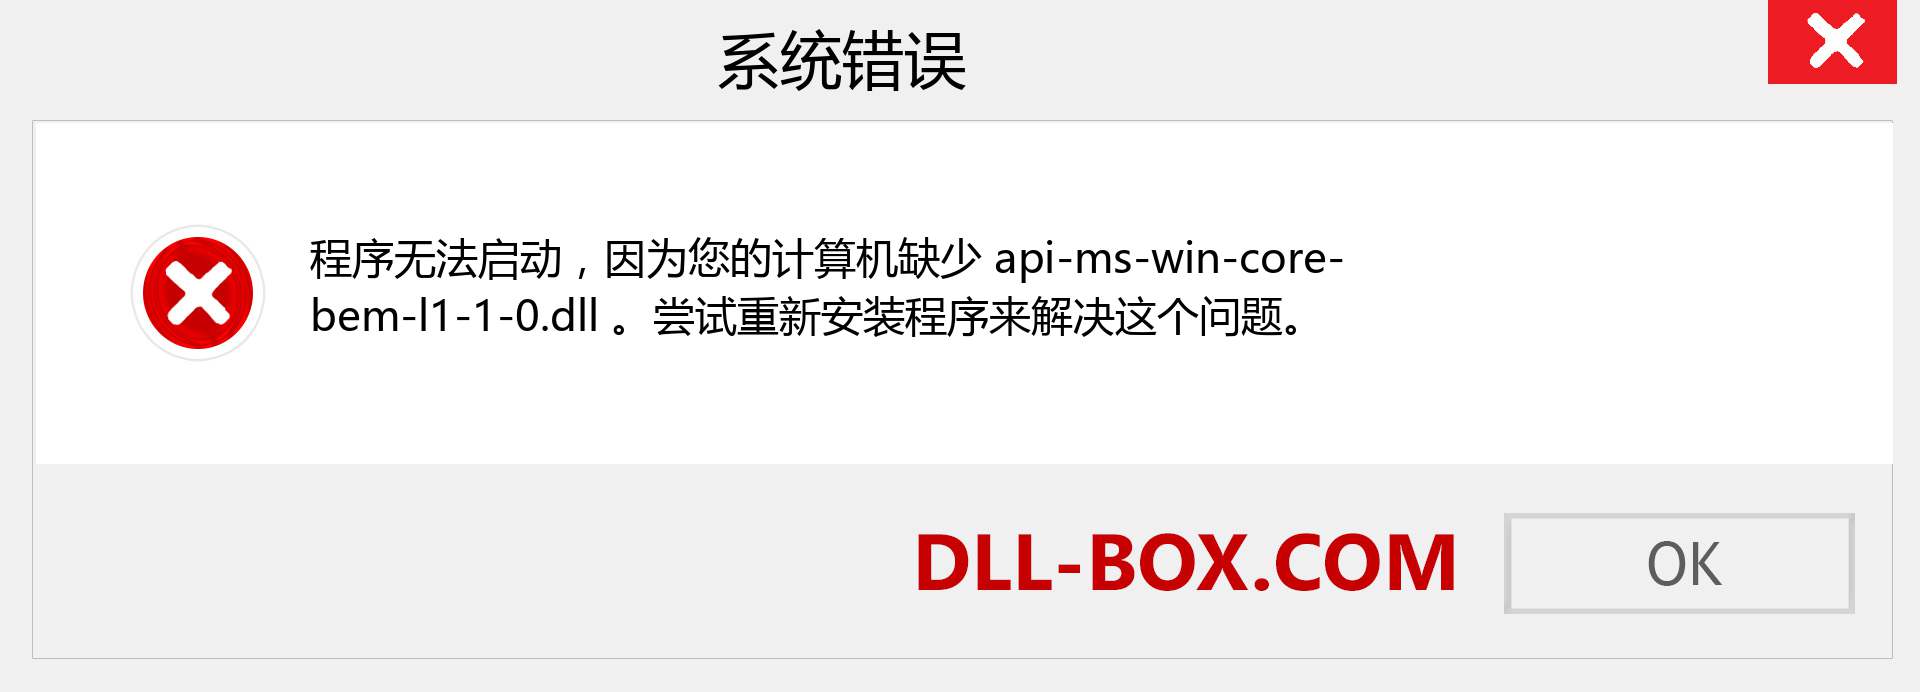 api-ms-win-core-bem-l1-1-0.dll 文件丢失？。 适用于 Windows 7、8、10 的下载 - 修复 Windows、照片、图像上的 api-ms-win-core-bem-l1-1-0 dll 丢失错误